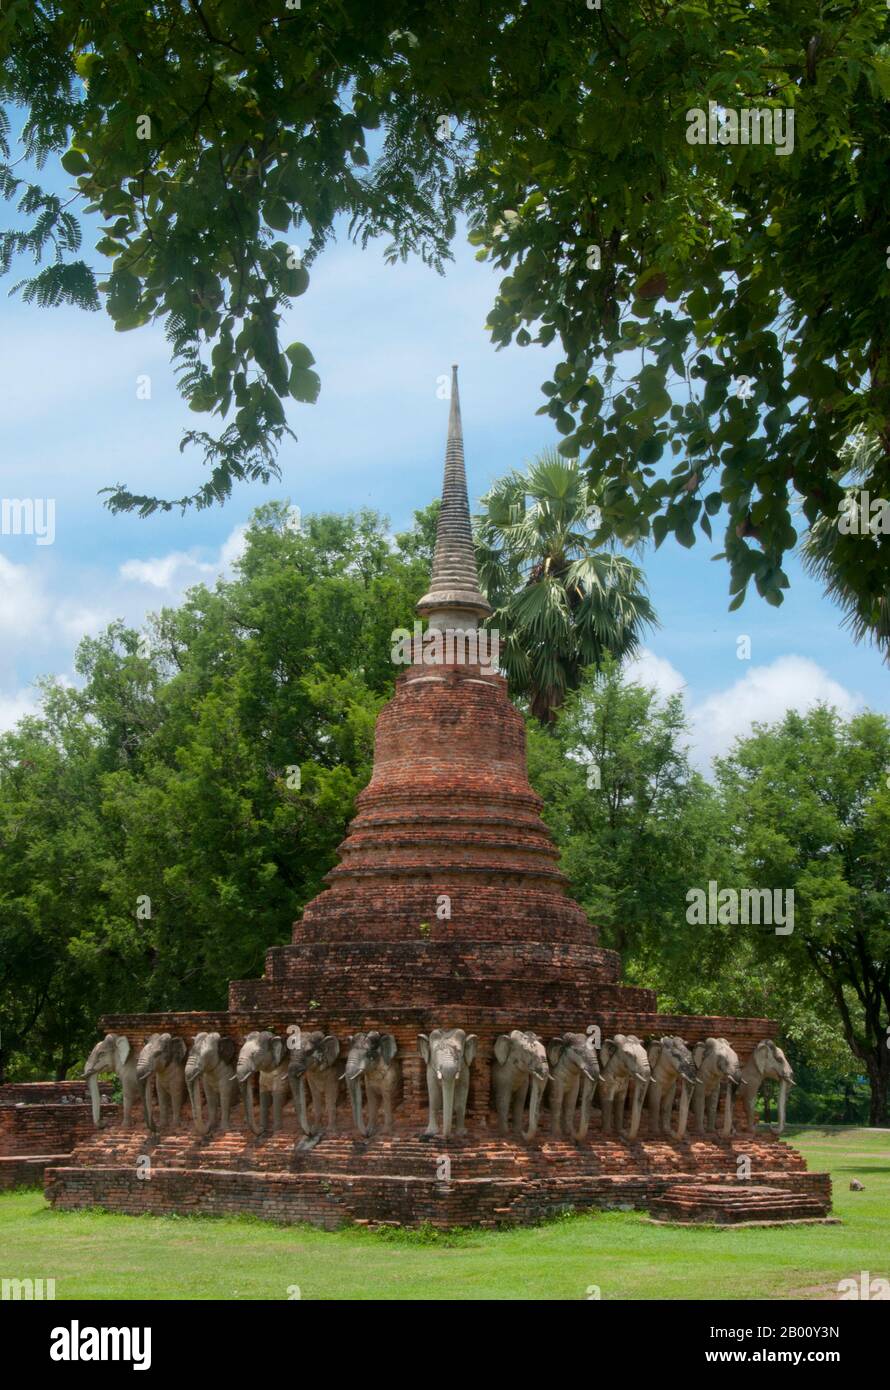 Thailand: Wat Sorasak, Sukhothai Historischer Park. Wat Sorasak wurde im frühen 15. Jahrhundert erbaut und ist bekannt für die 24 Elefanten, die die Basis des Sri Lanka-Stil Chedi umgeben. Sukhothai, was wörtlich "Dawn of Happiness" bedeutet, war die Hauptstadt des Sukhothai-Königreichs und wurde 1238 gegründet. Es war die Hauptstadt des thailändischen Reiches für etwa 140 Jahre. Stockfoto